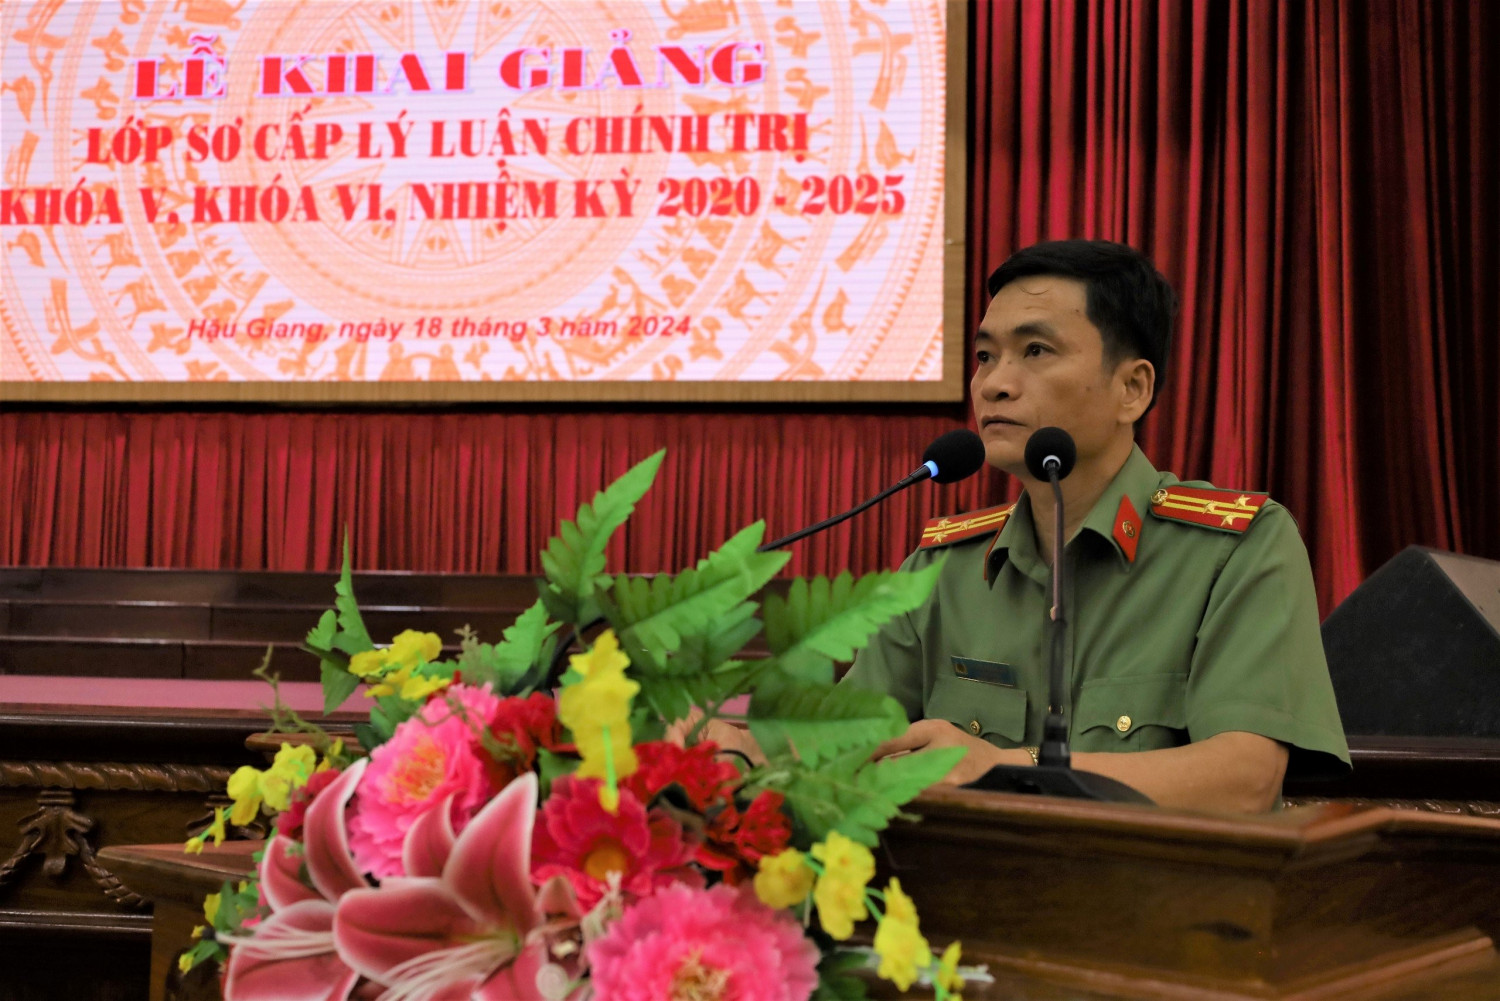 Đồng chí Thượng tá Dương Hoàng An, Ủy viên Ban Thường vụ Đảng ủy, Trưởng phòng Phòng Tổ chức cán bộ phát biểu tại Lễ Khai giảng